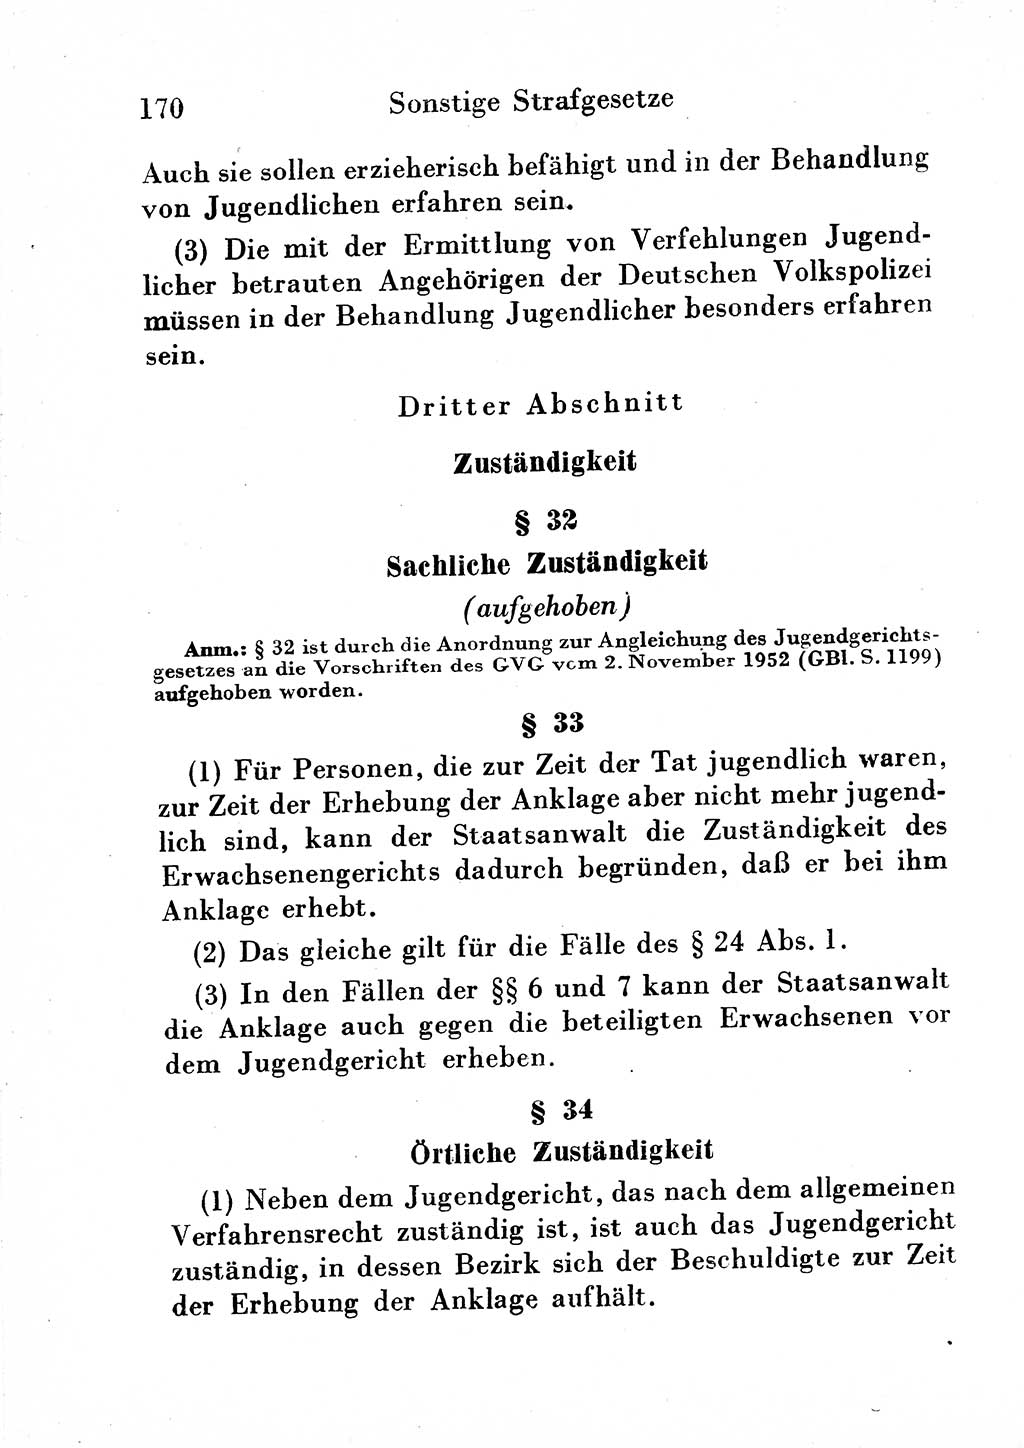 Strafgesetzbuch (StGB) und andere Strafgesetze [Deutsche Demokratische Republik (DDR)] 1954, Seite 170 (StGB Strafges. DDR 1954, S. 170)